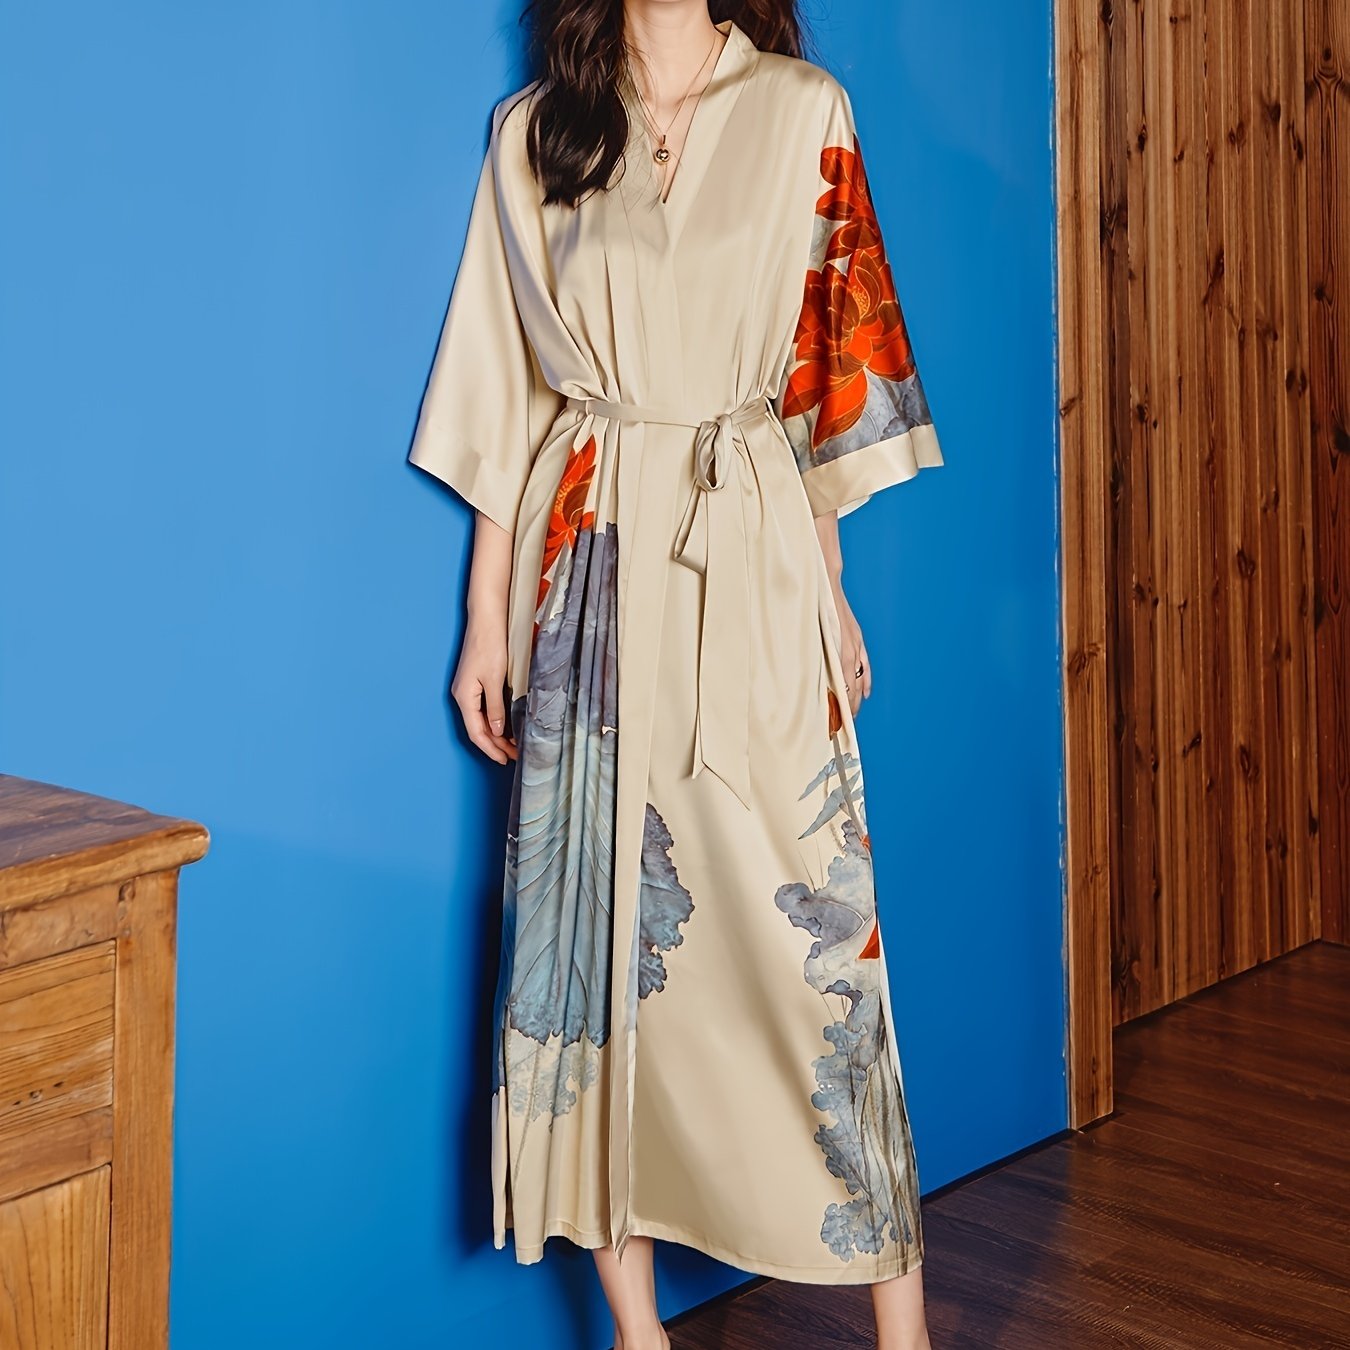 Kimono Robes For Women Long Satin Robe Floral Robes Kimonos Bathrobe ...